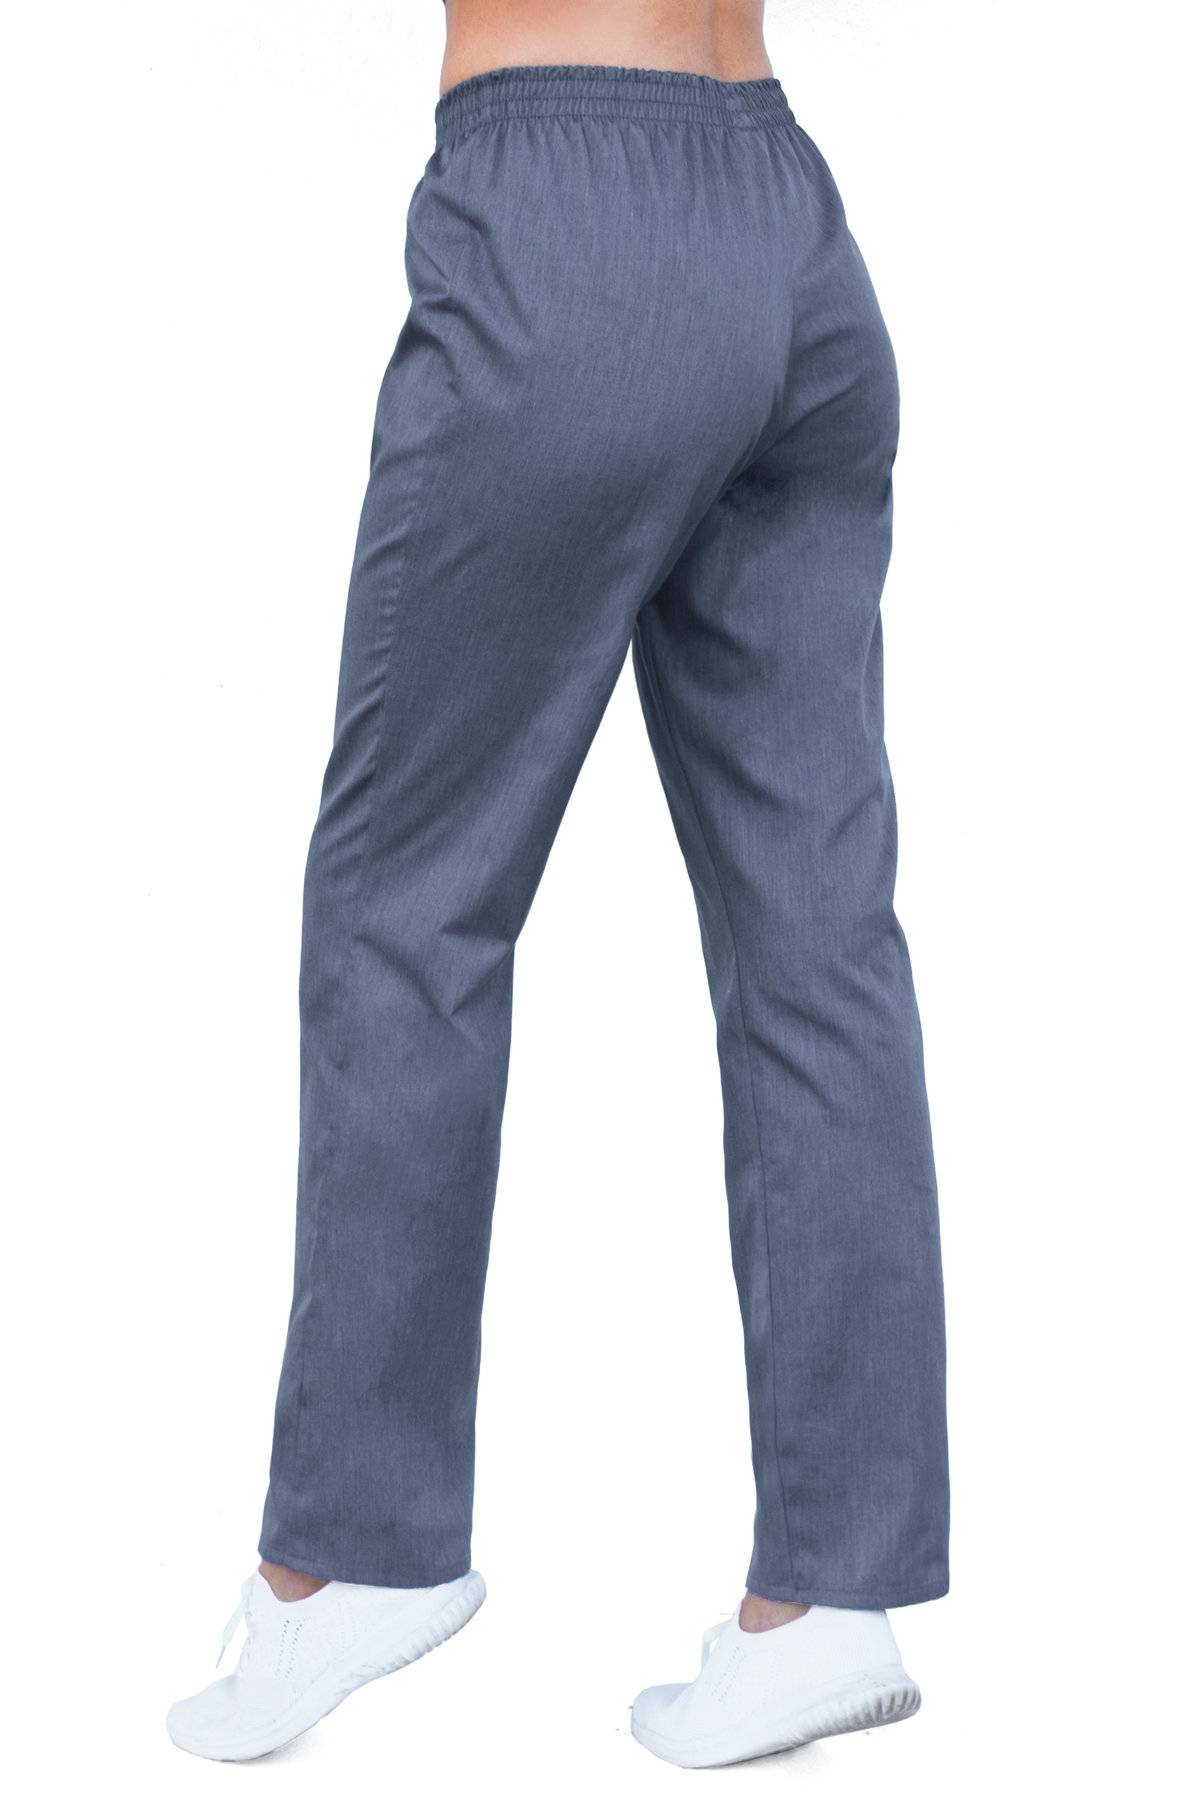 Spodnie medyczne damskie z elastycznym pasem SC4(b) (8 kolorów)